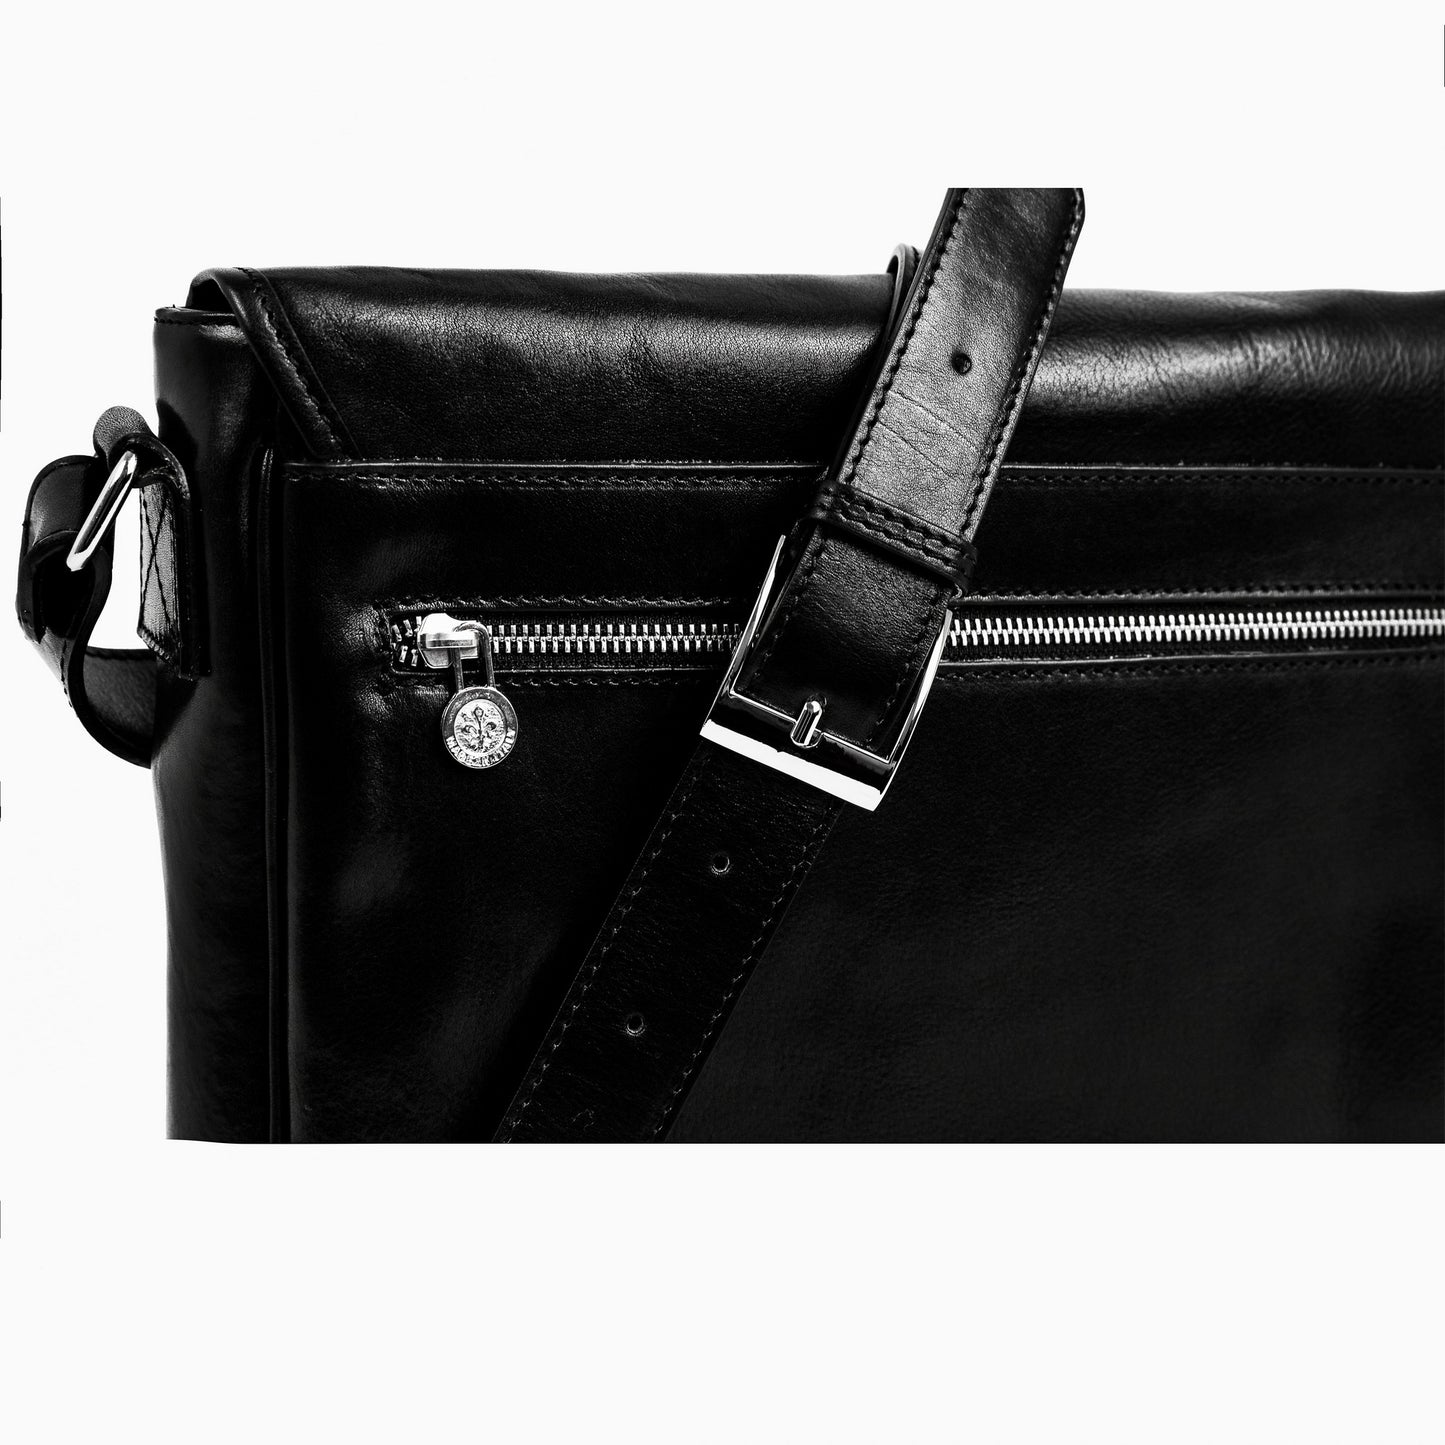 Leather Messenger Bag – The Stranger